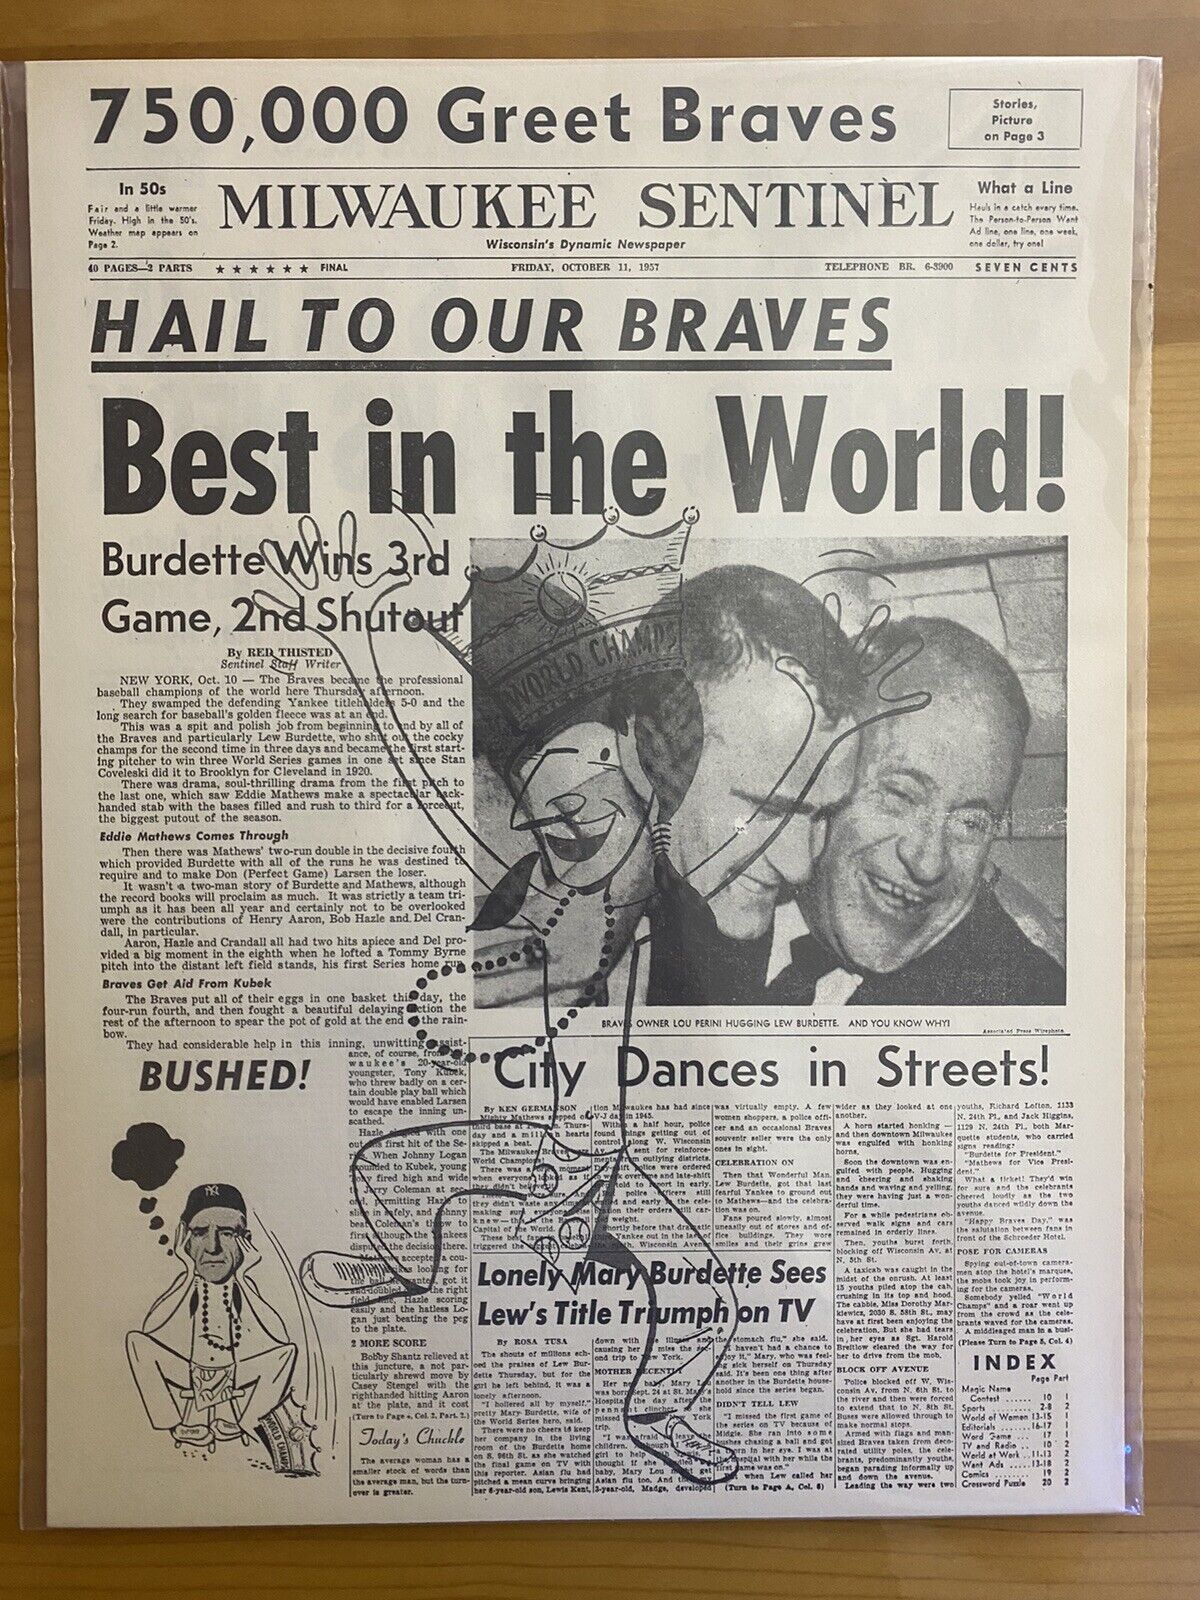 VINTAGE NEWSPAPER HEADLINE WORLD SERIES CHAMPIONS MILWAUKEE BRAVES BASEBALL 1957